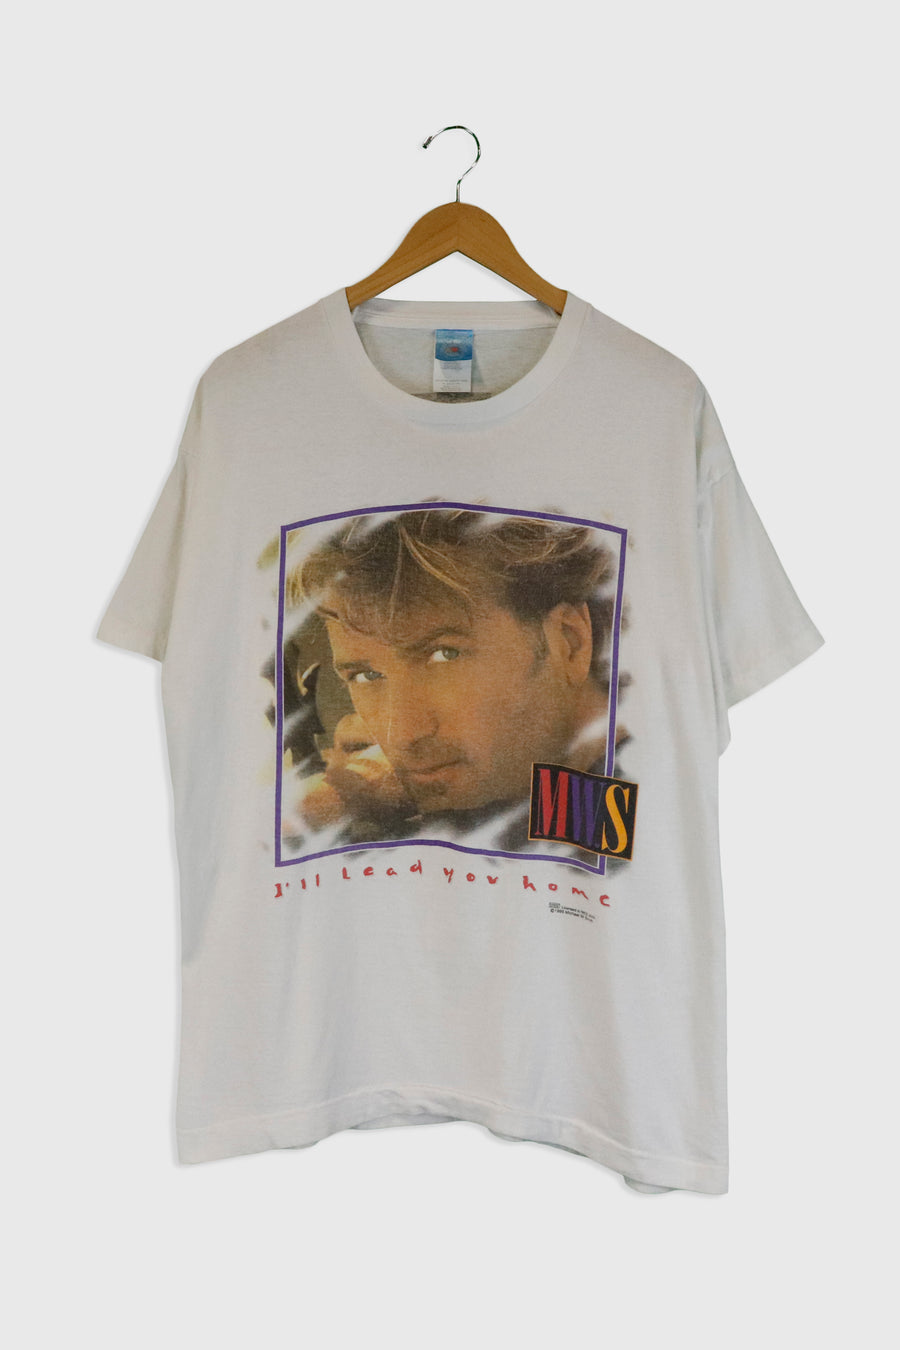 Vintage 1996 Michael W. Smith Band T Shirt Sz XL